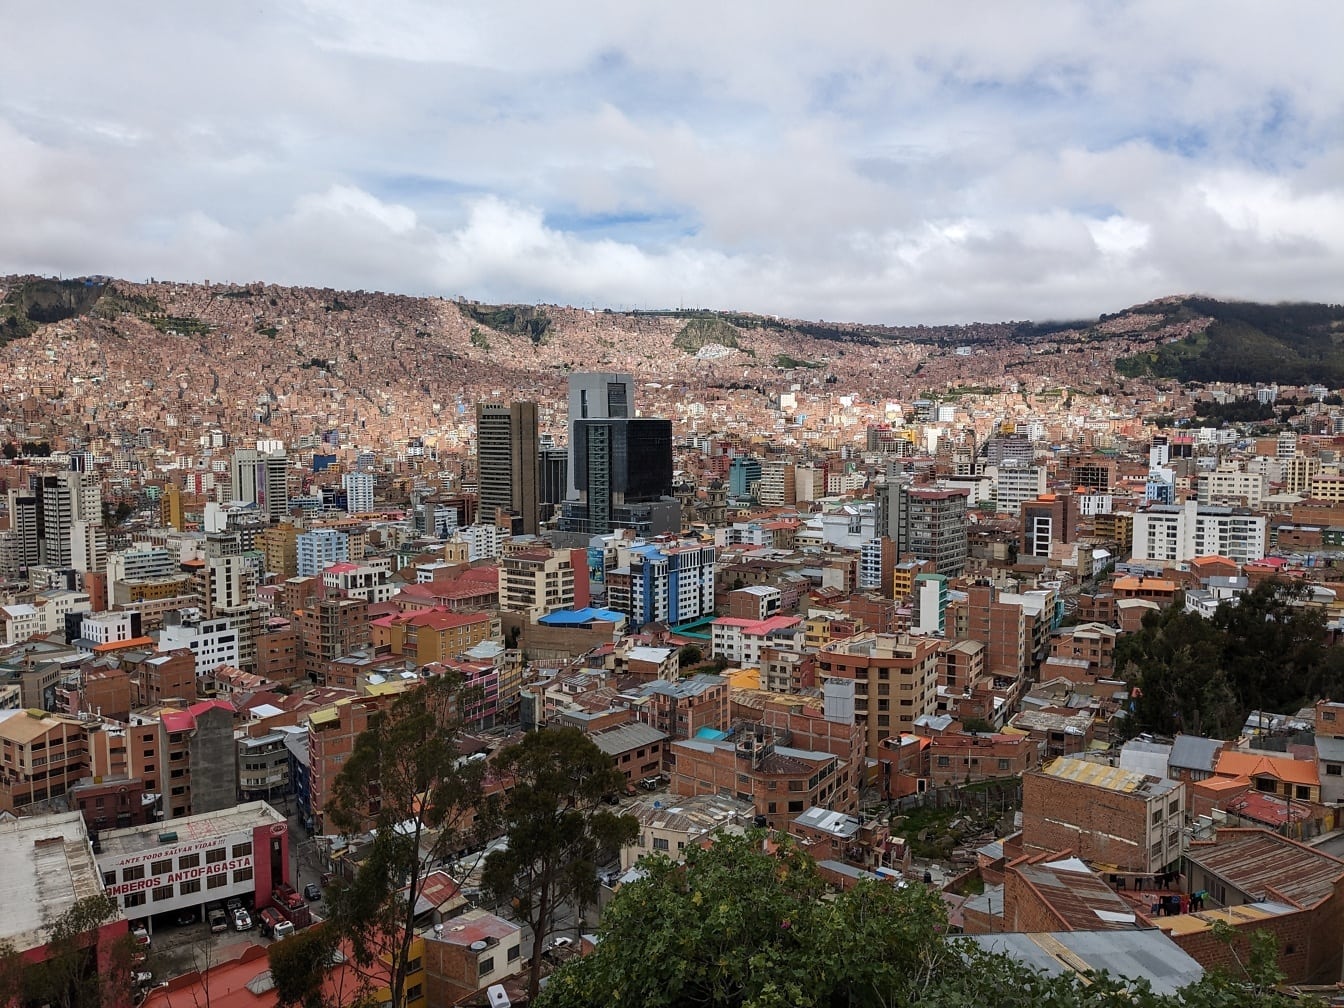 Toàn cảnh thành phố Mirador Killi Killi với thành phố La Paz ở Bolivia với nhiều tòa nhà